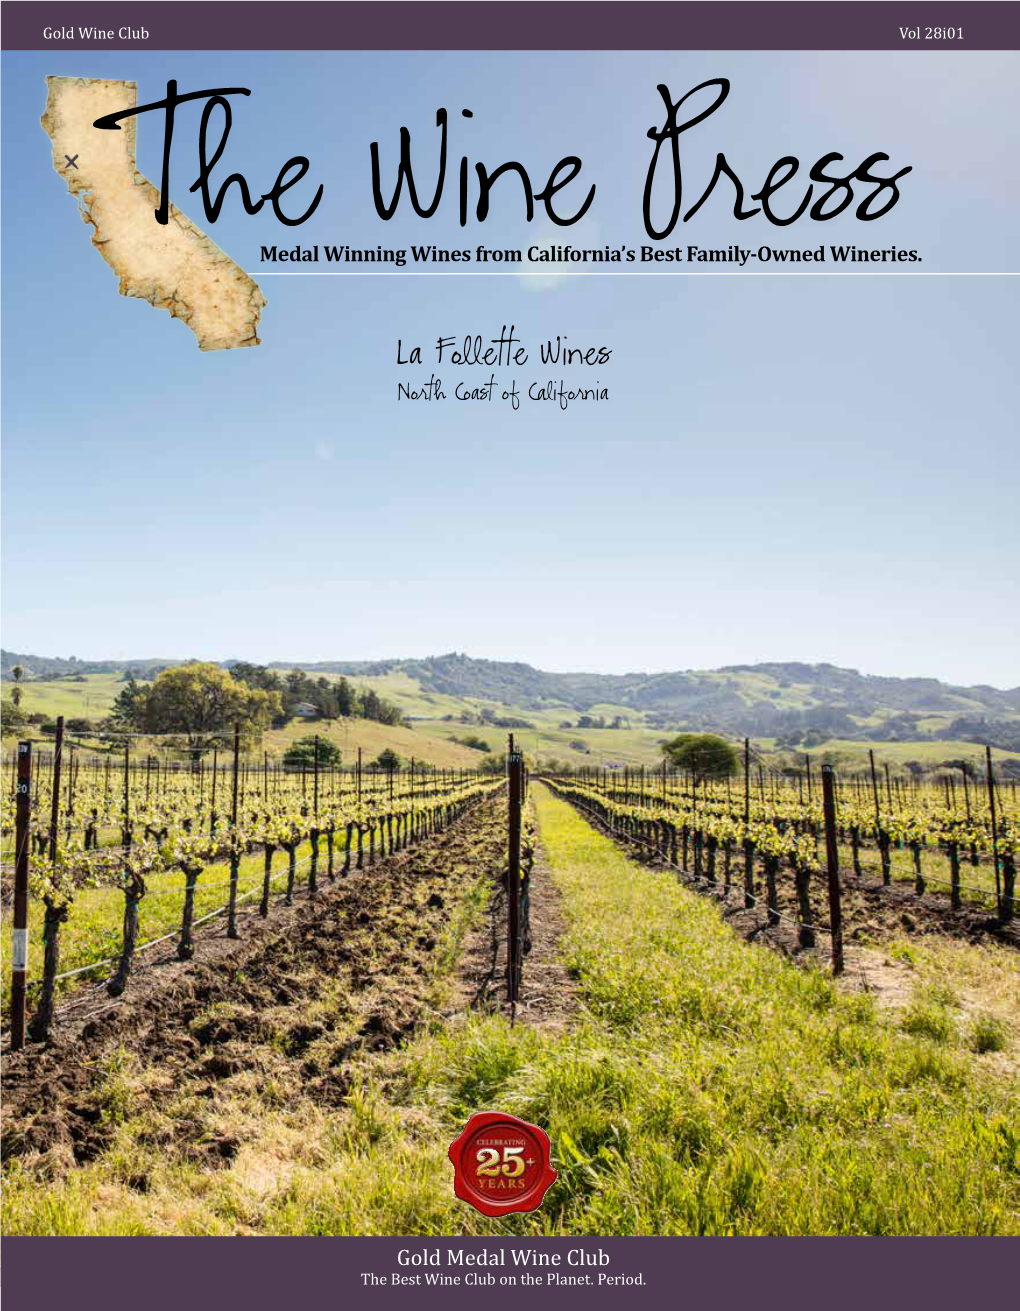 La Follette Wines North Coast of California